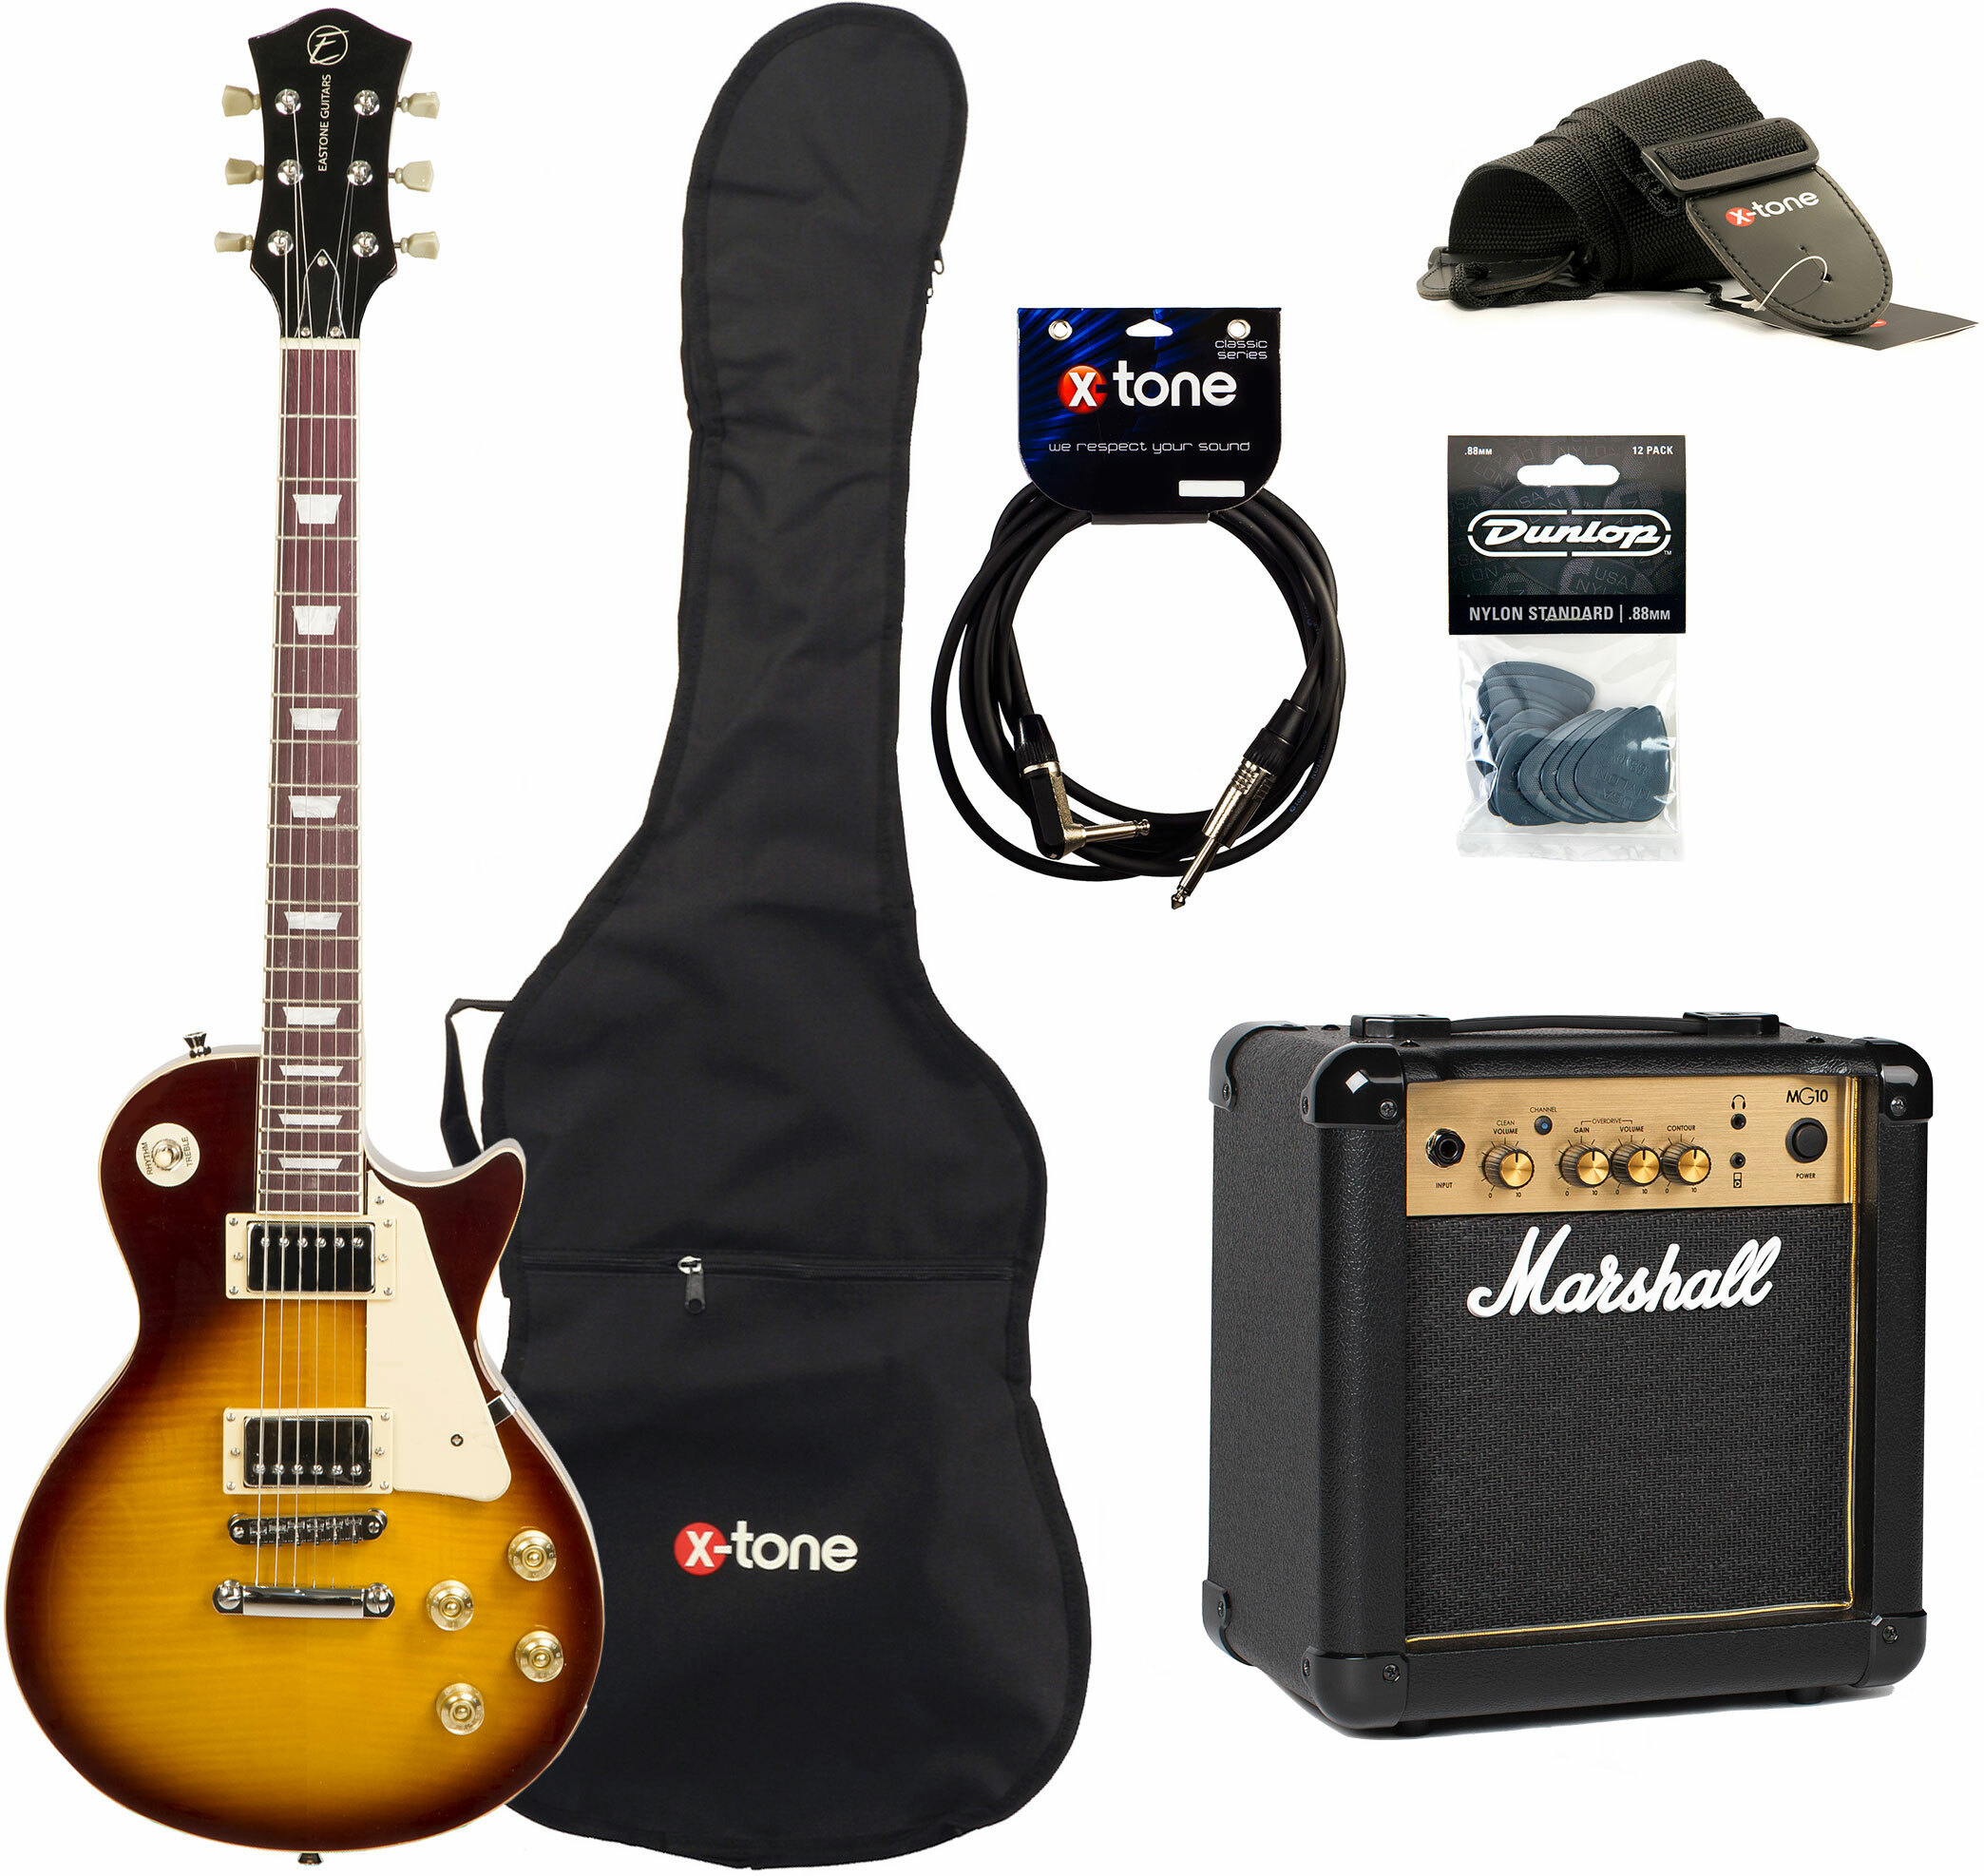 Eastone Lp200 Hb +marshall Mg10 10w +cable +mediators +housse - Honey Sunburst - E-Gitarre Set - Main picture